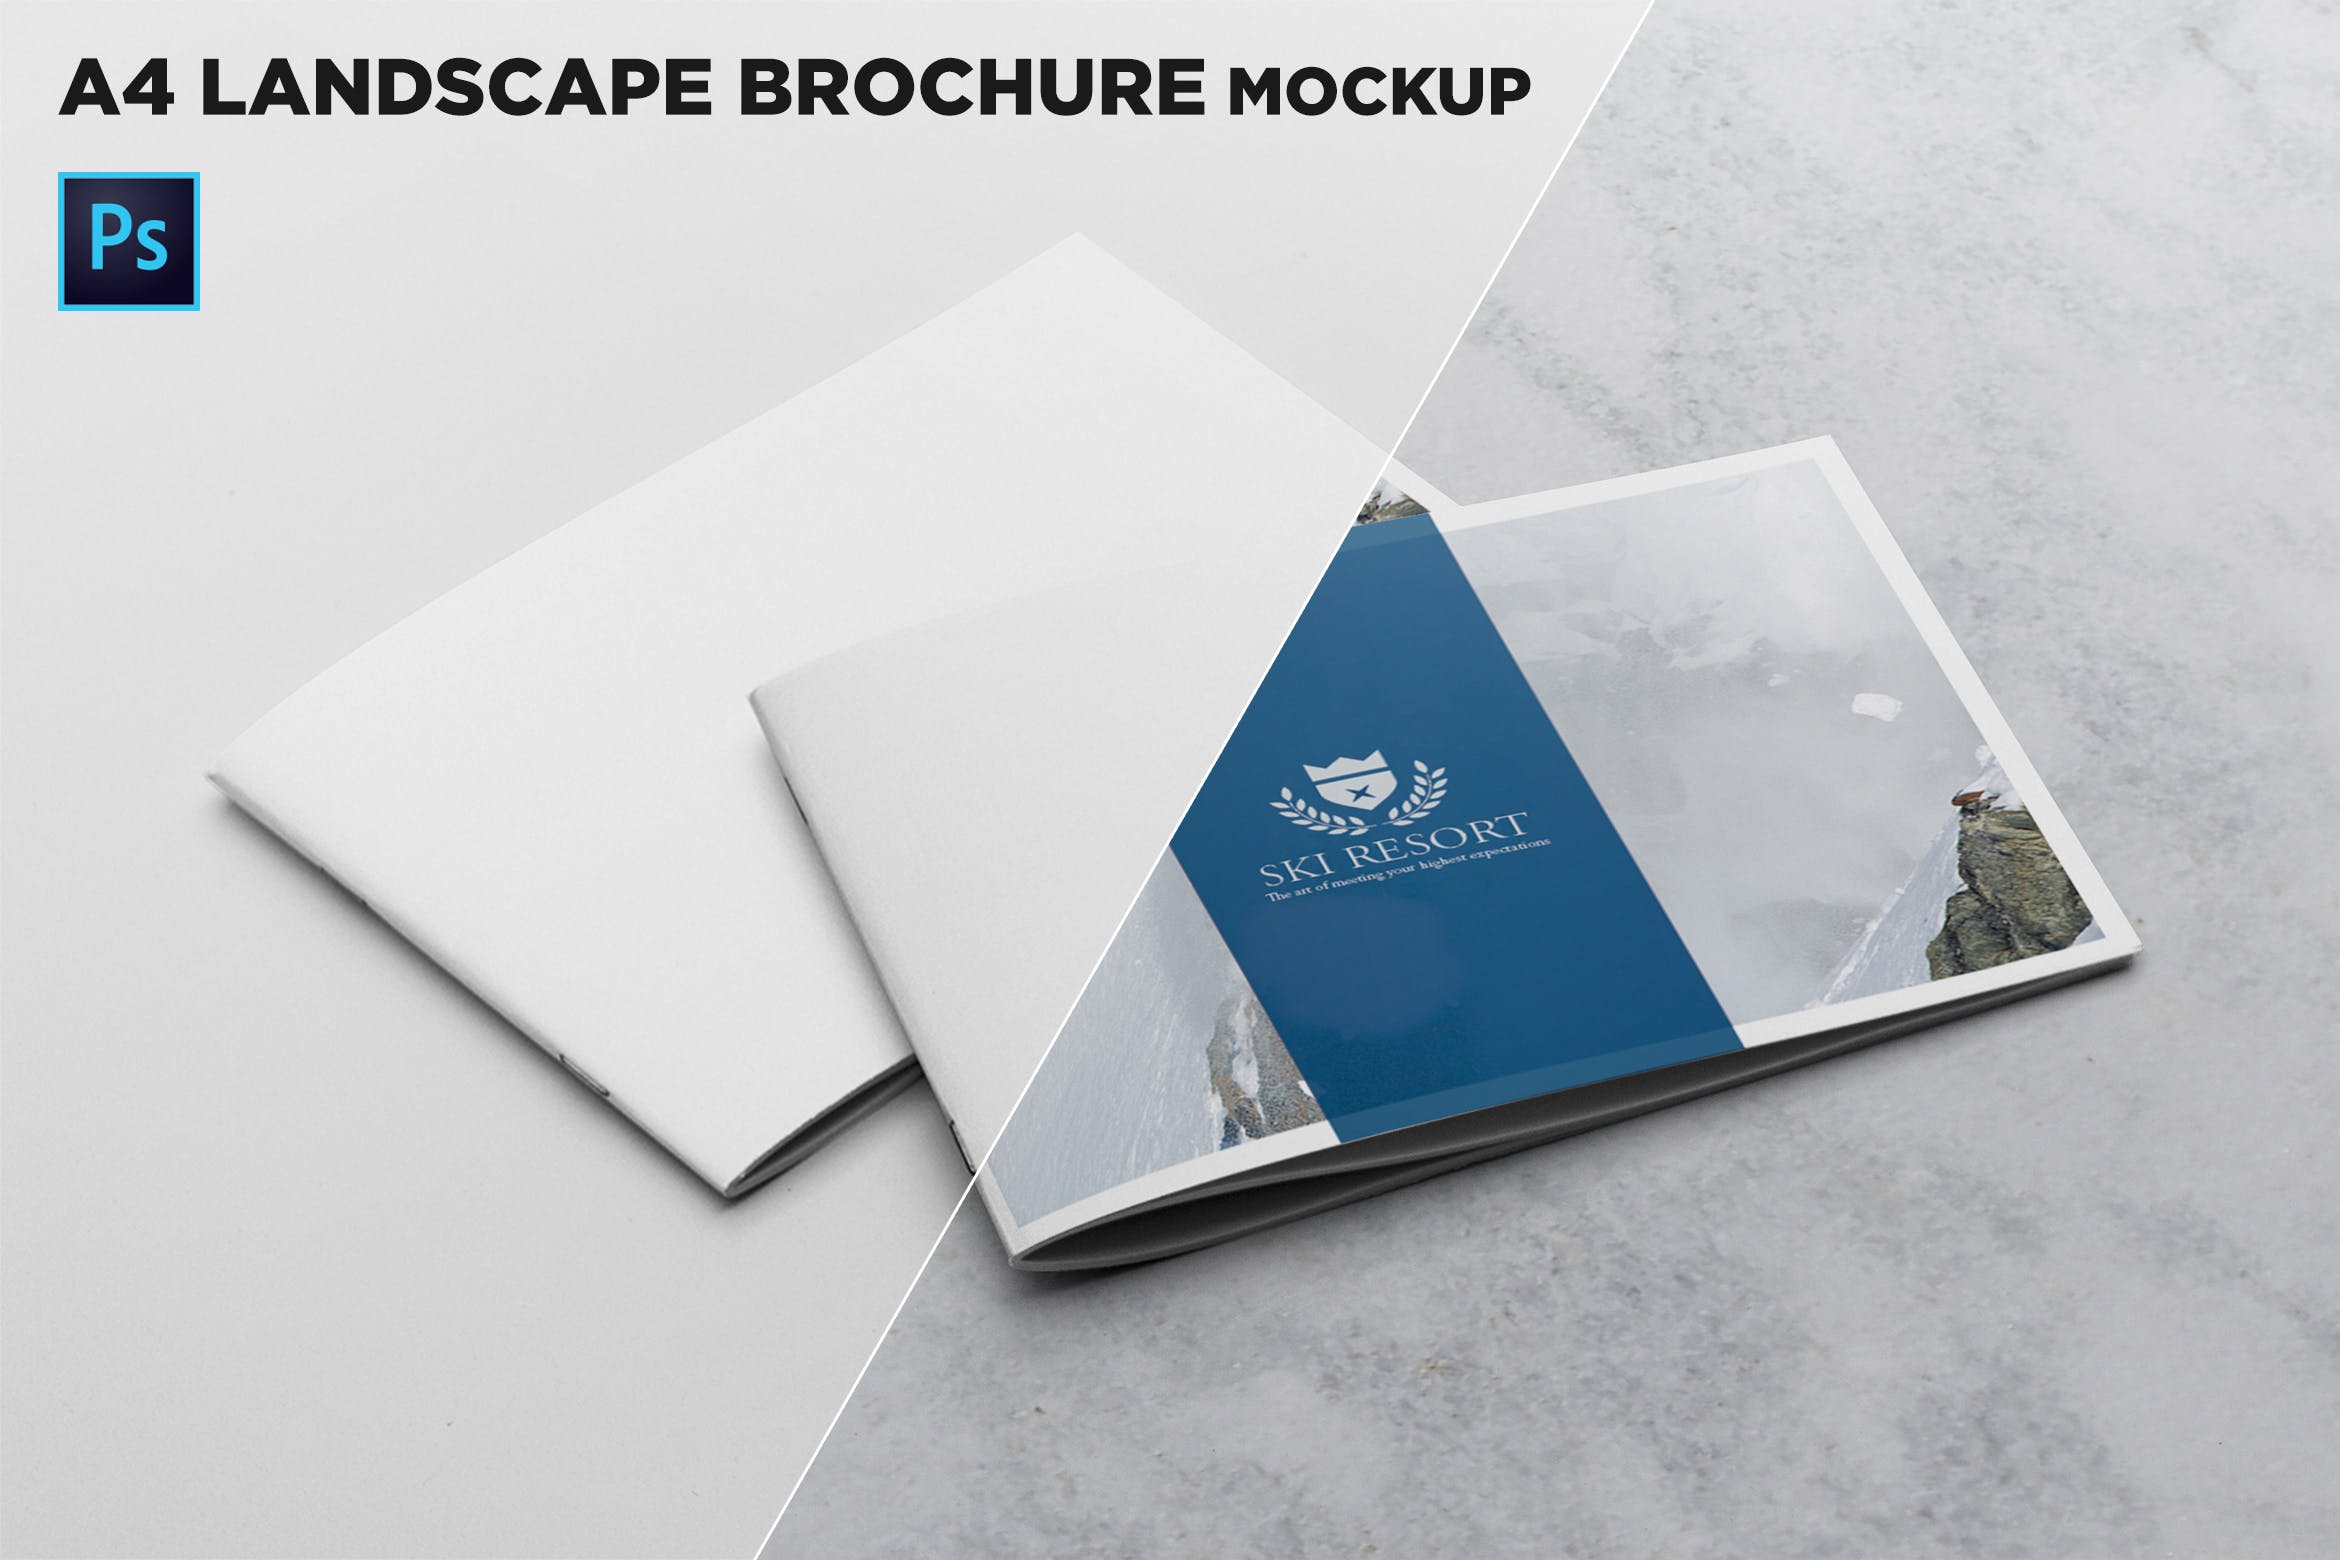 宣传画册/企业画册叠放效果图样机大洋岛精选模板 2 Covers Landscape Brochure Mockup插图